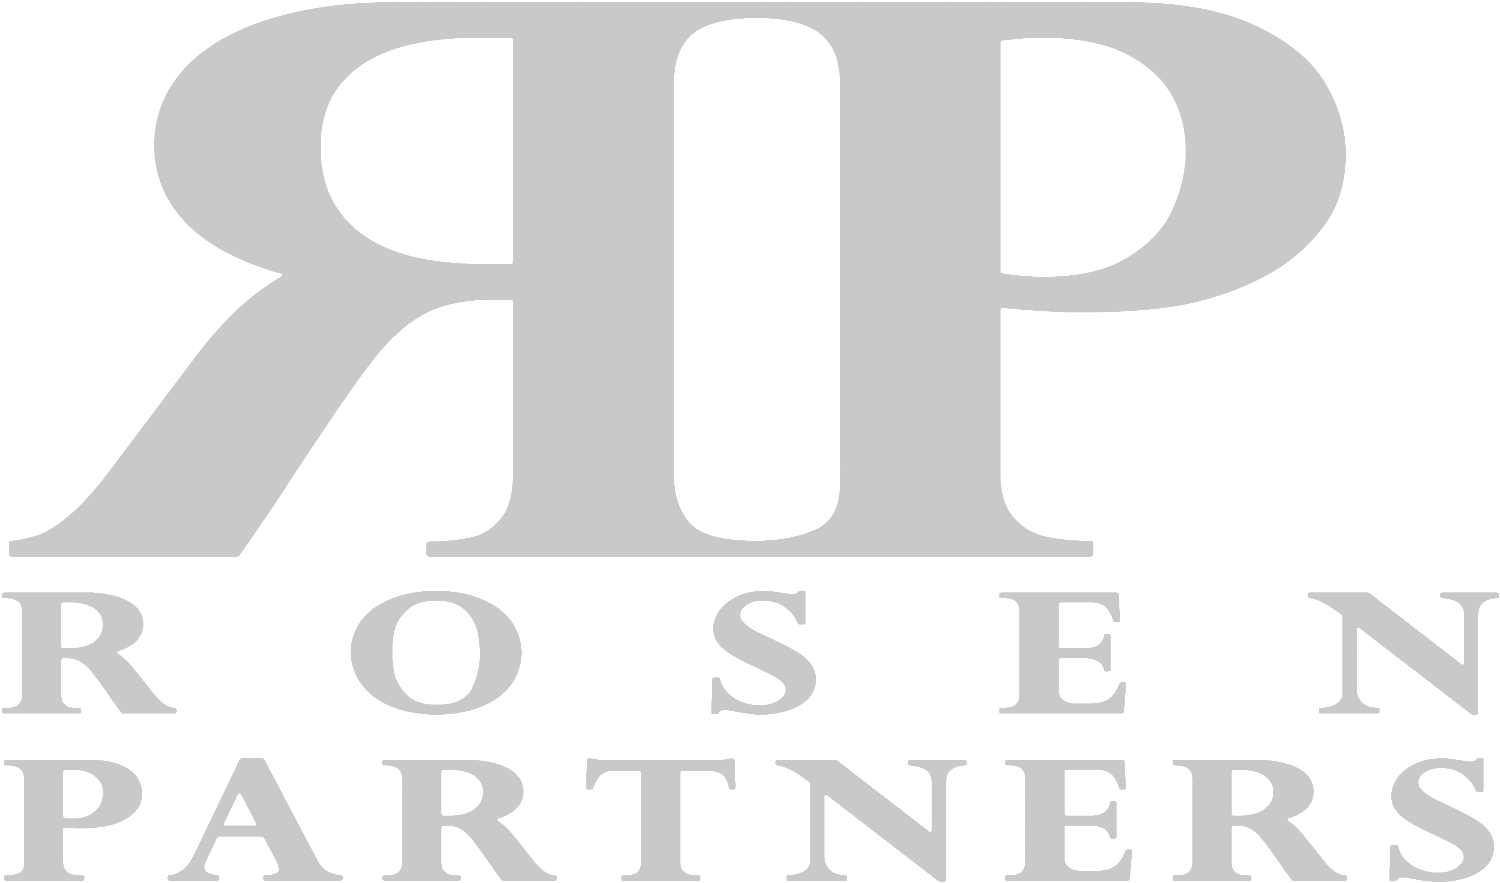 Rosen Partners